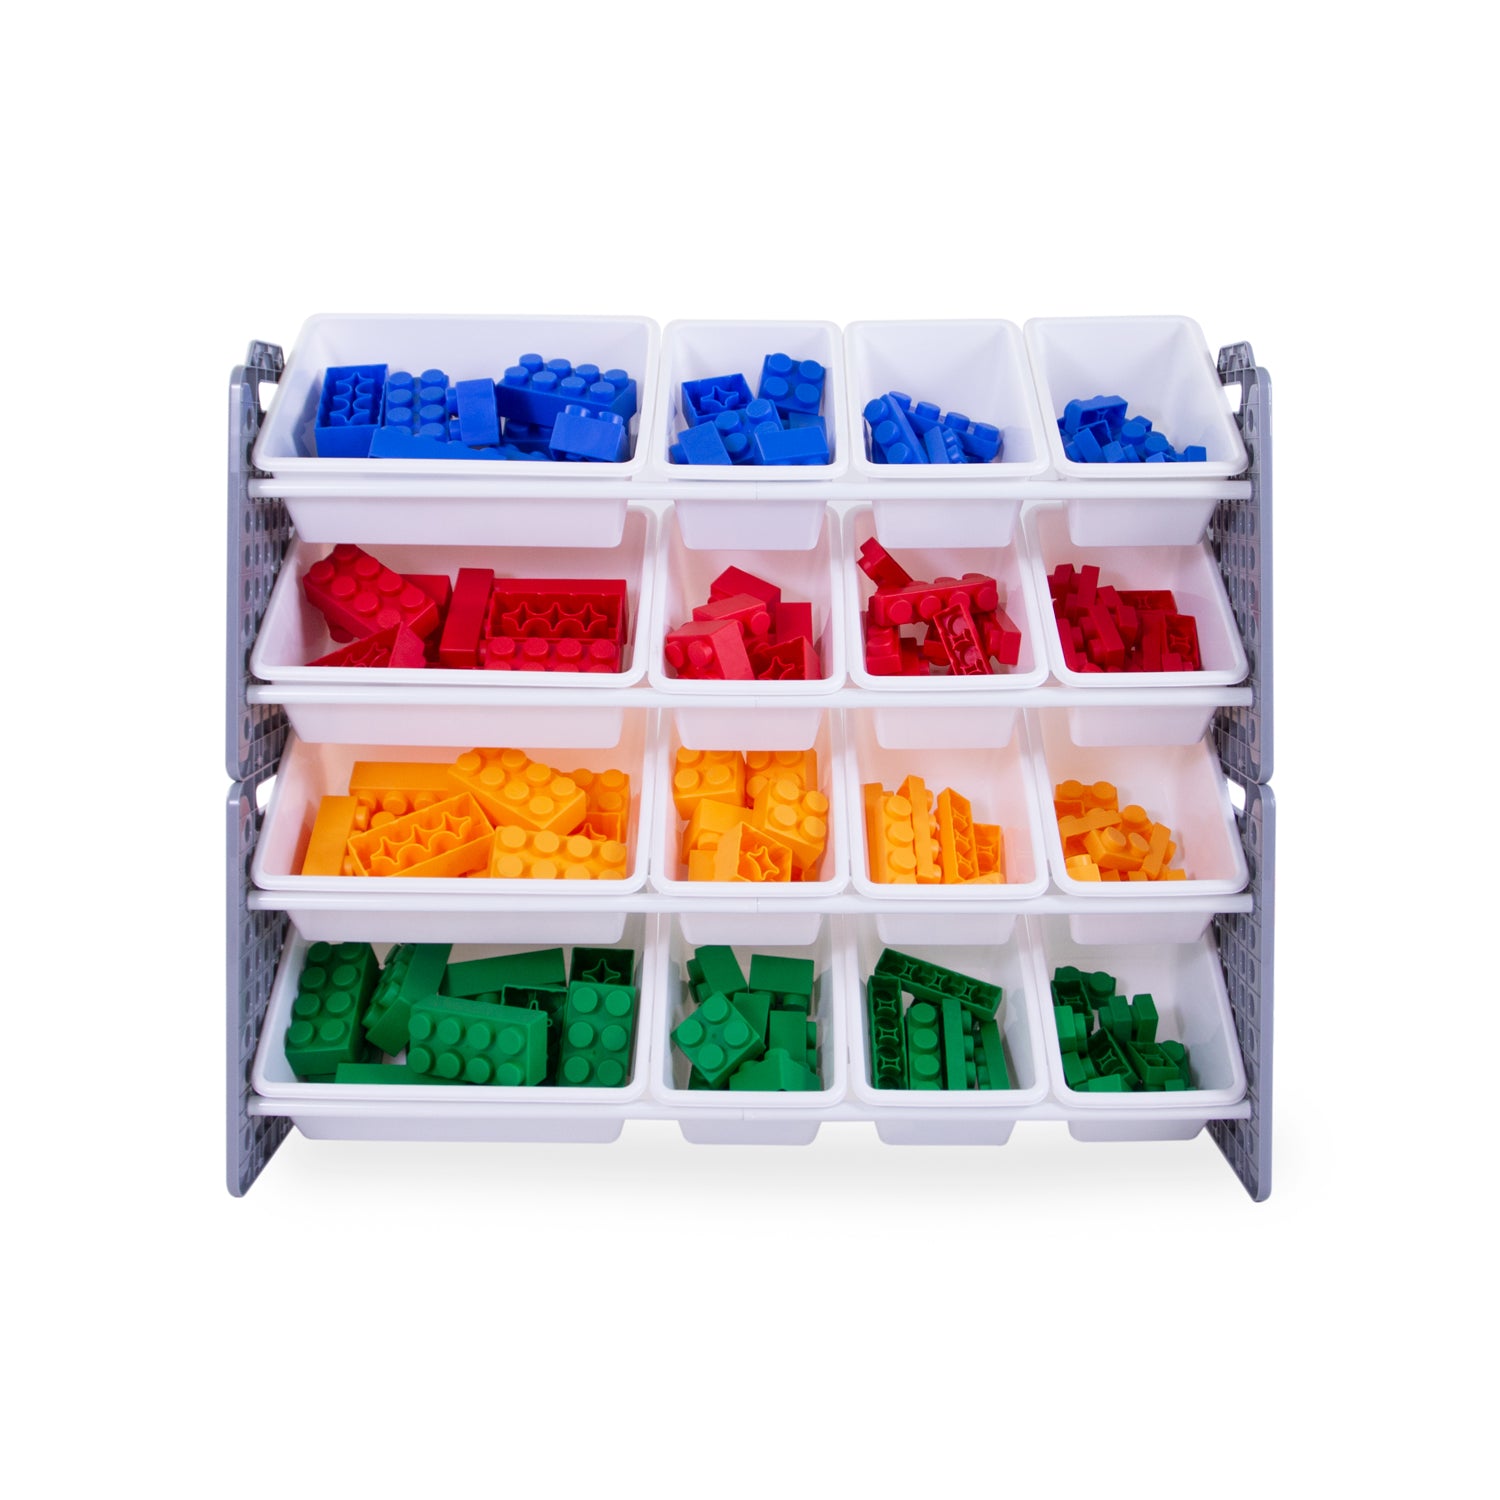 UNiPLAY 16 Bins Toy Storage Organizer - Gray (UB45712)